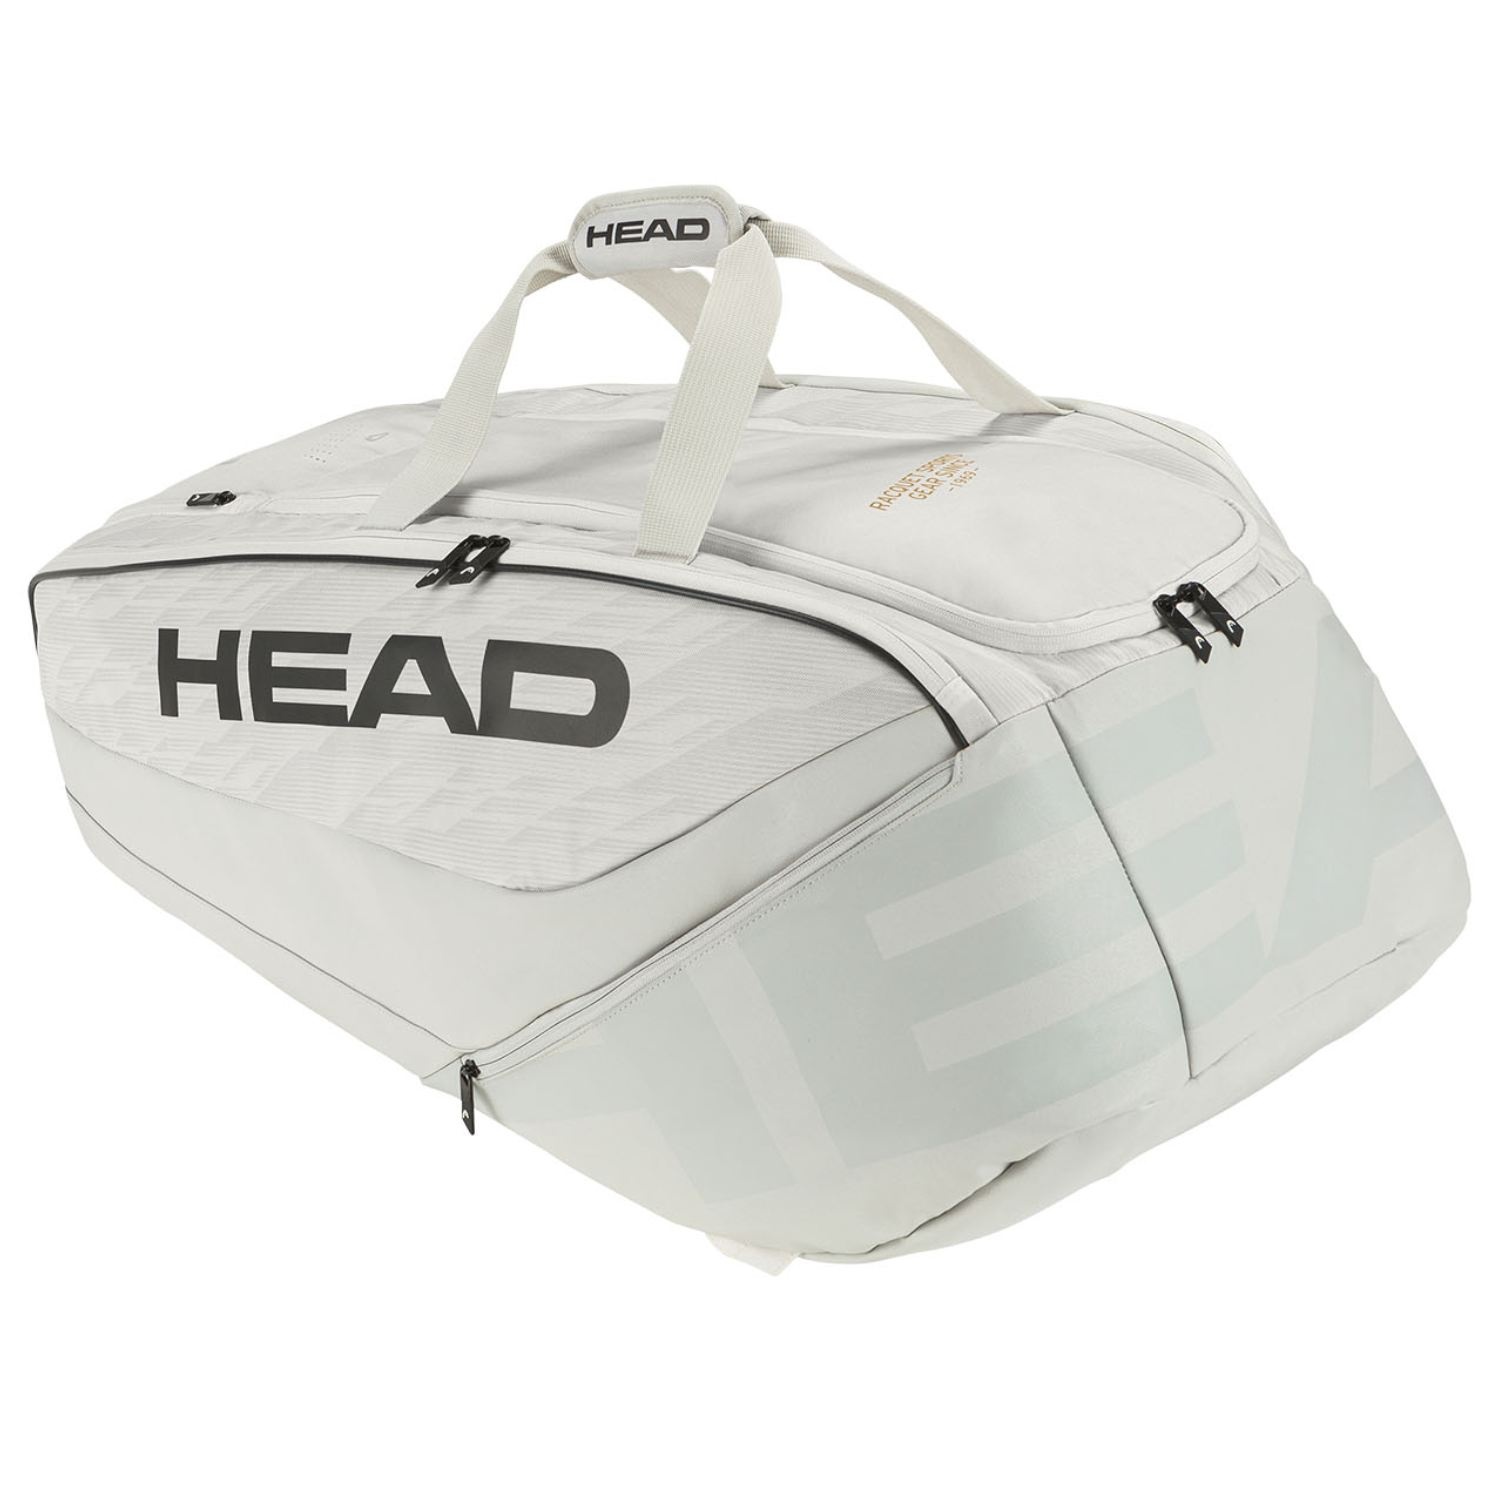 Head Pro X Raquet Bag XL White